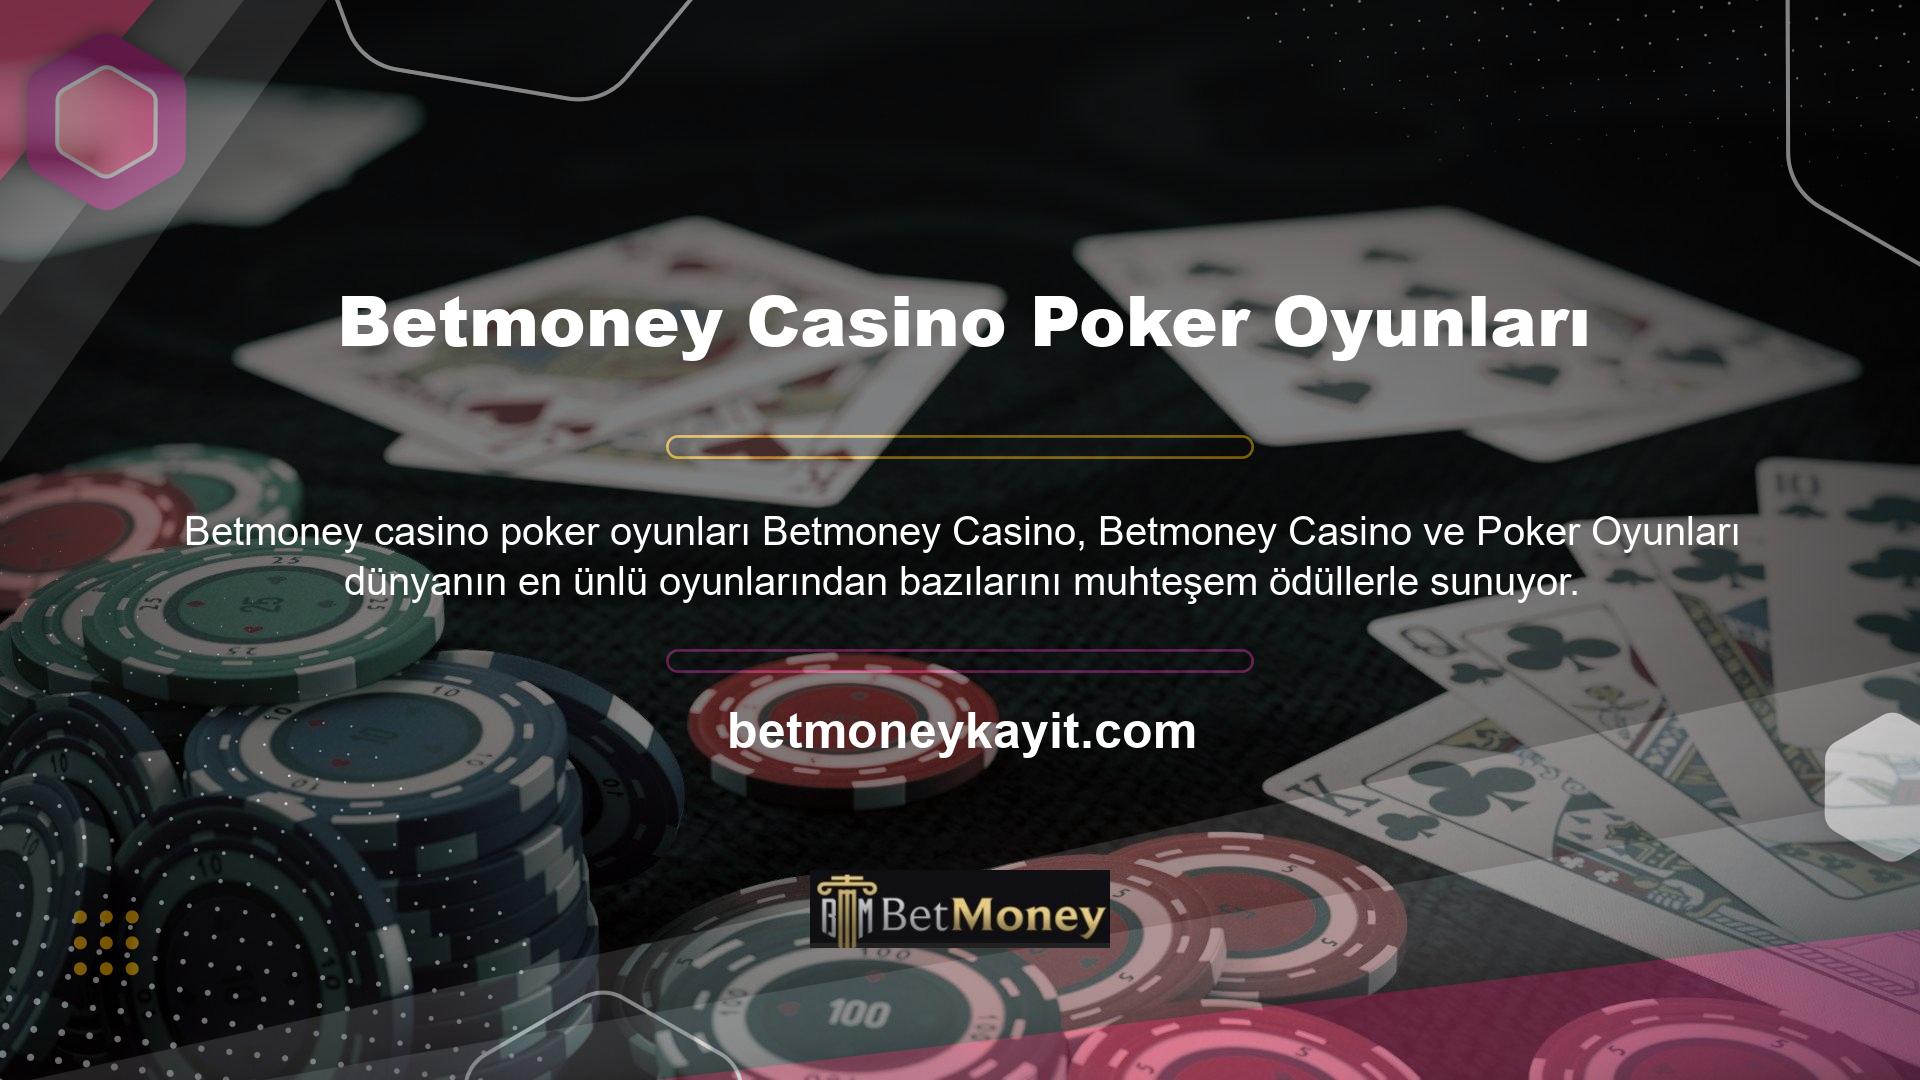 Betmoney, oynarken eğlenmek ve para kazanmak isteyenler için sanal casino hizmetleri ve ortak buluşma yeri sunan yüksek kaliteli bir casino platformudur